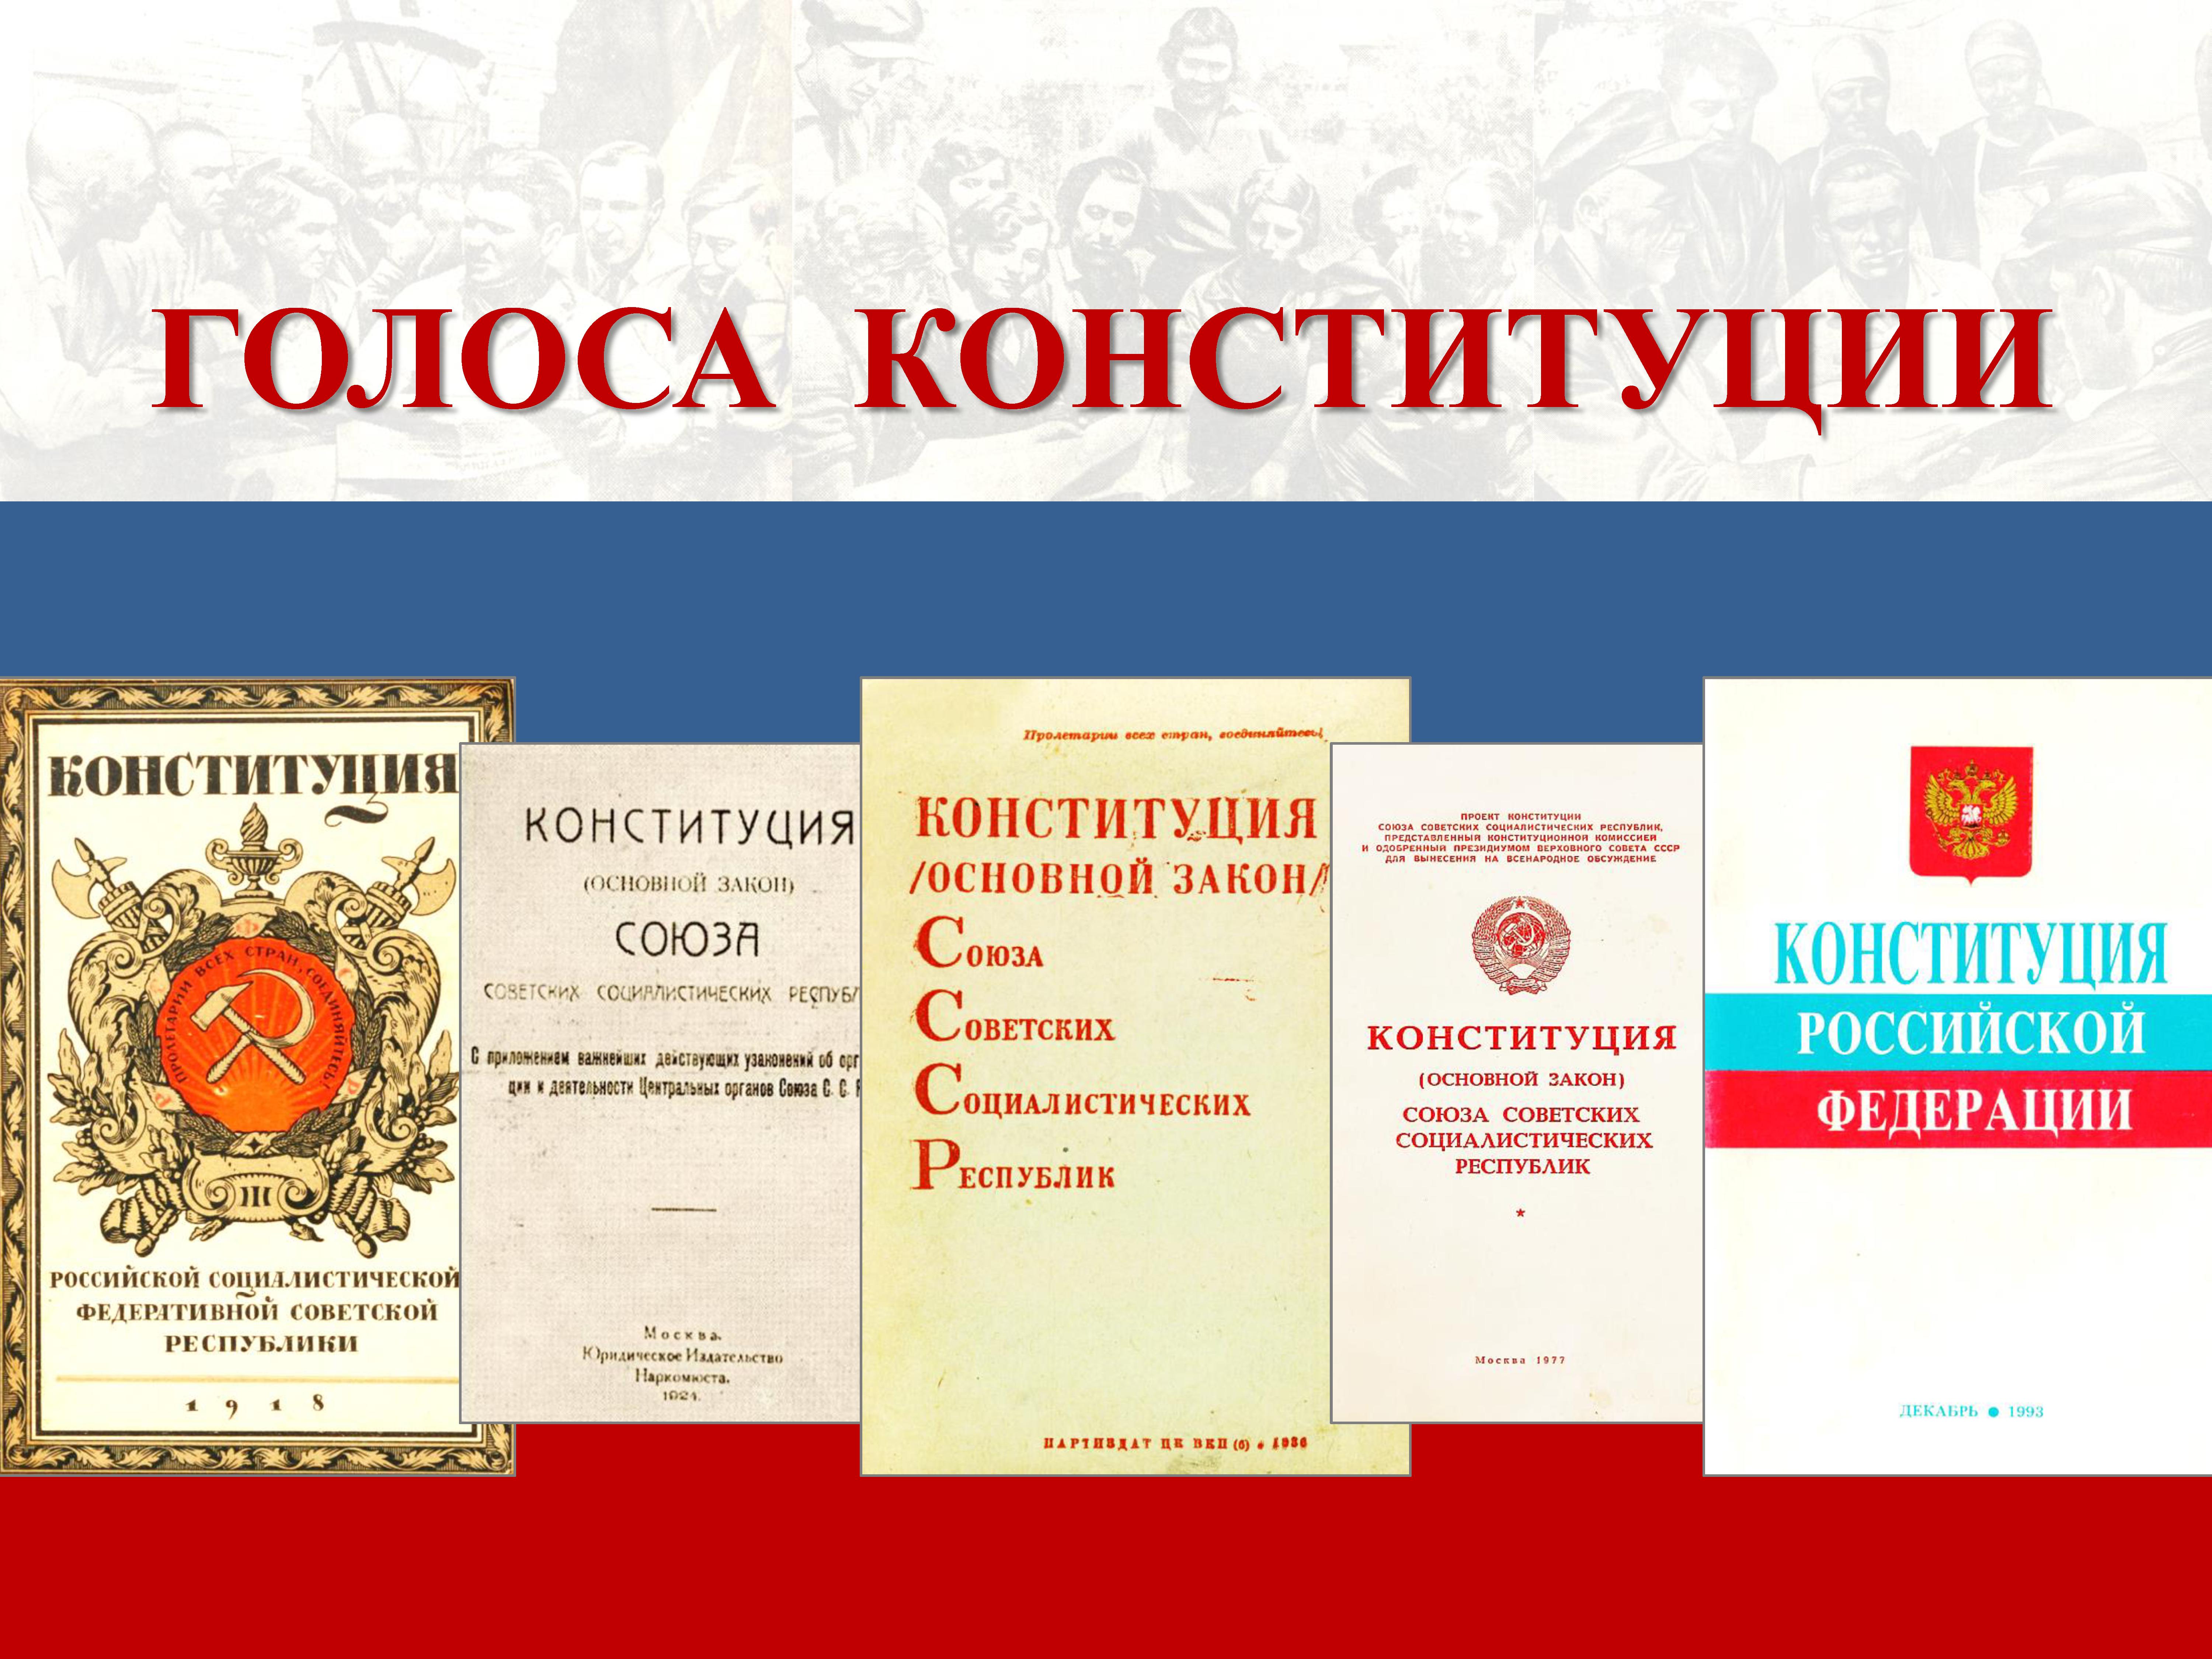 Архивная служба Оренбургской области представляет проект «Голоса Конституции»